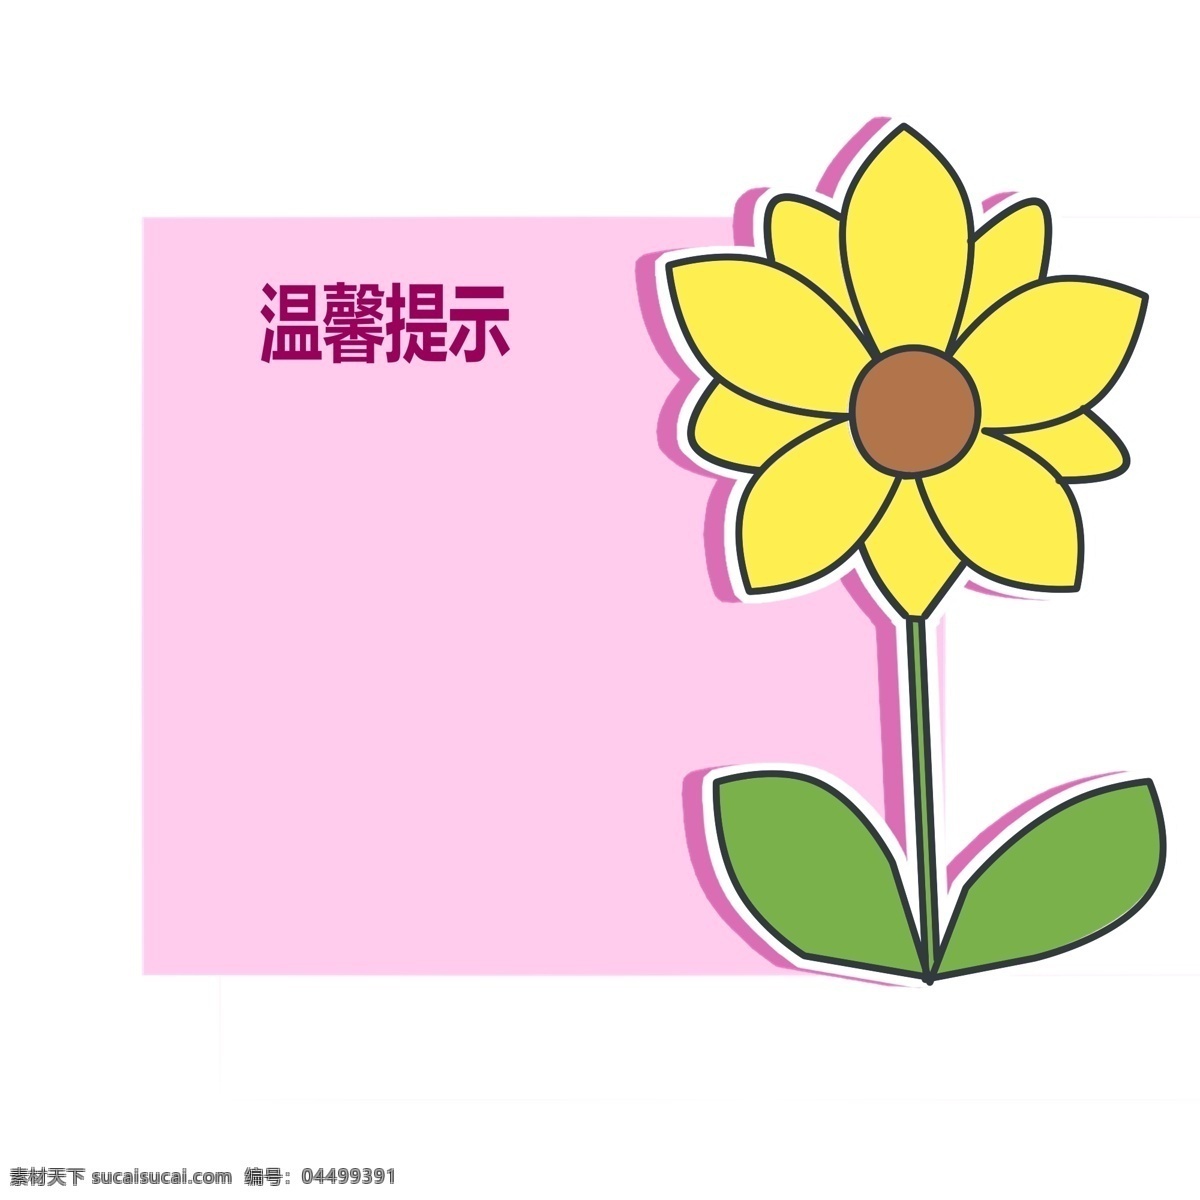 温馨 提示 花朵 边框 温馨提示边框 粉色的边框 植物边框 花卉边框 绿色的叶子 可爱的边框 立体边框